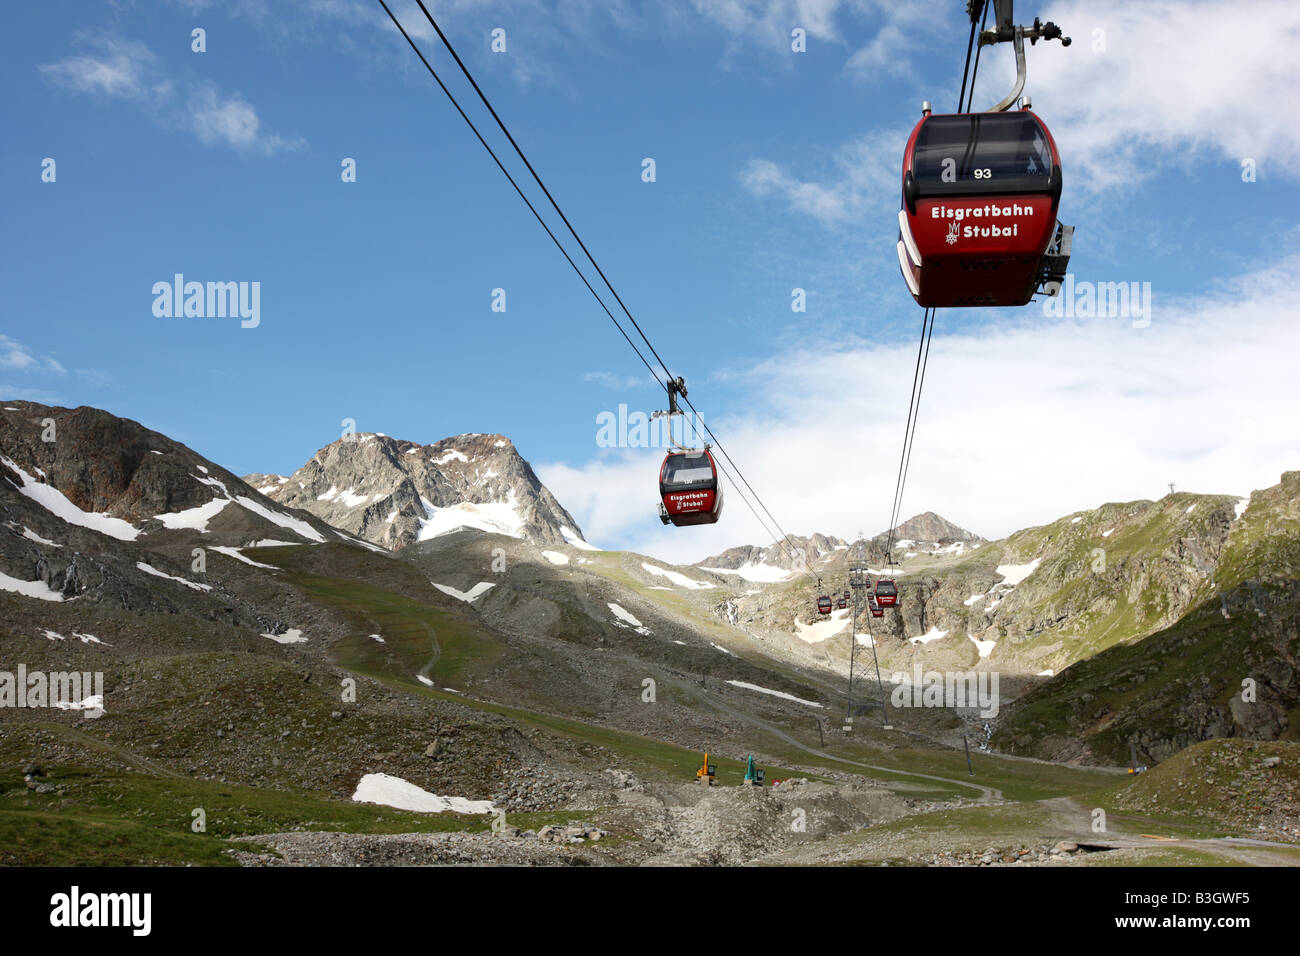 AUT, Austria, Tyrol: Stubaital, Stubai Valley. Driving with the ropeway to the Stubai glacier. Stock Photo